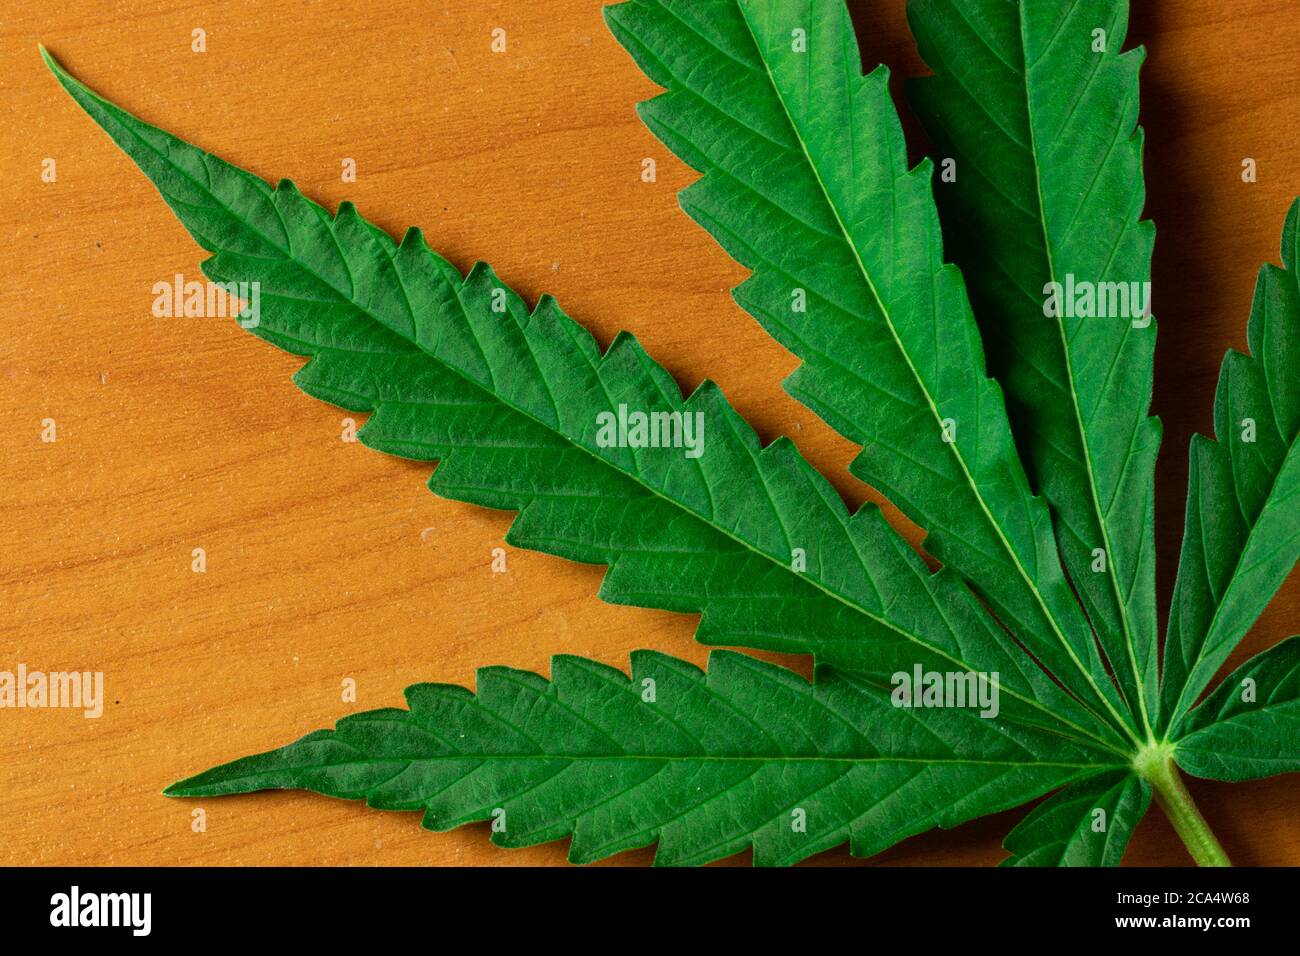 Großes grünes Cannabisblatt Draufsicht auf Hintergrund. Raumdesign kopieren. Marihuana-Geschäft. THC-Industriekonzept Stockfoto